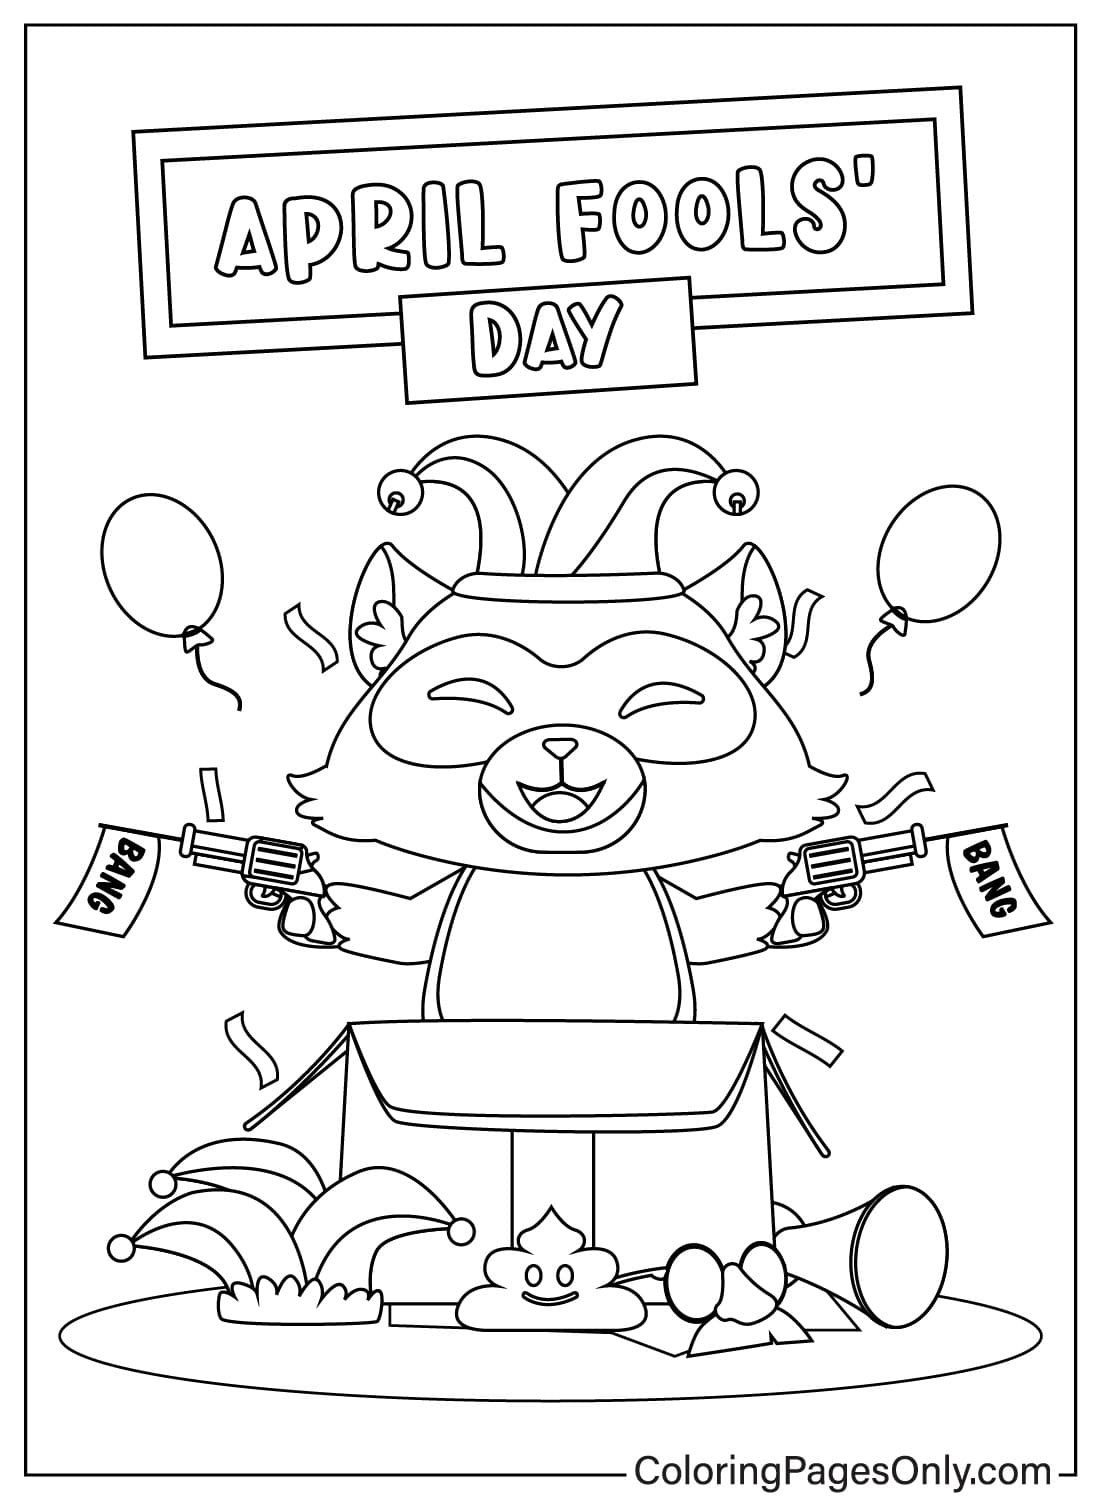 April Fool's Day kleurplaat JPG van April Fool's Day